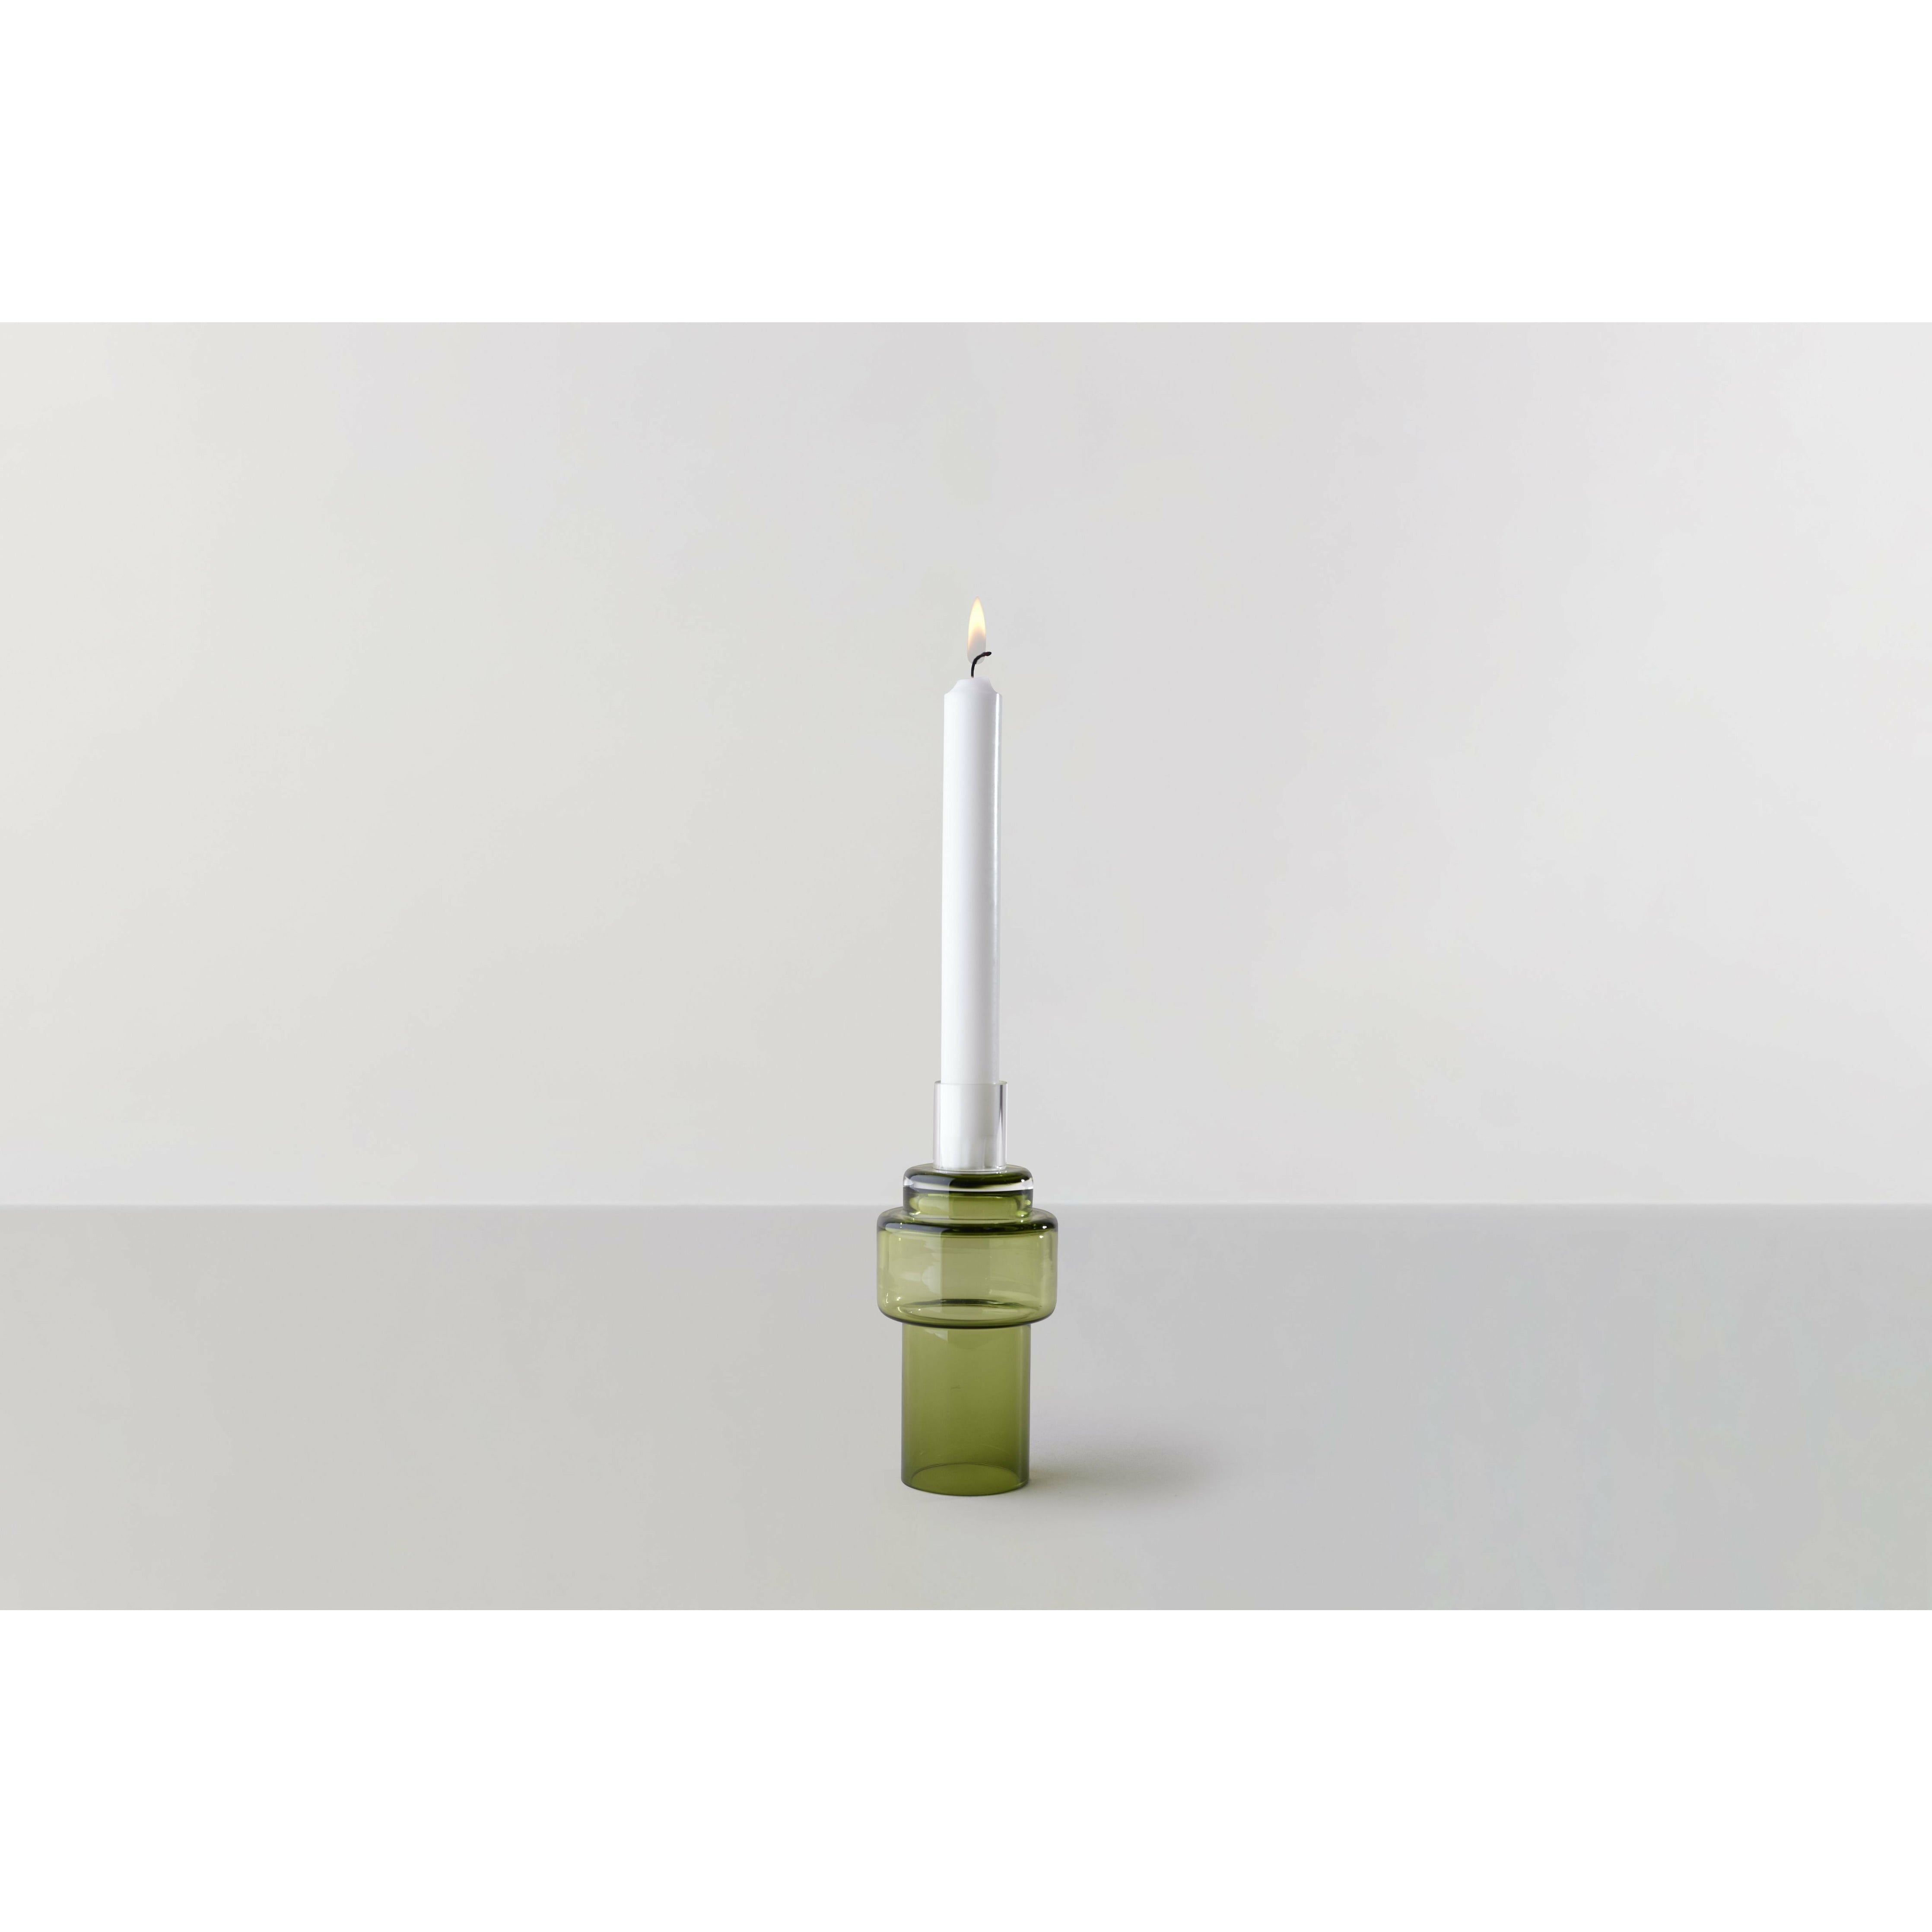 RO -Sammlung Nr. 55 Glass Candlestick, Moss Green